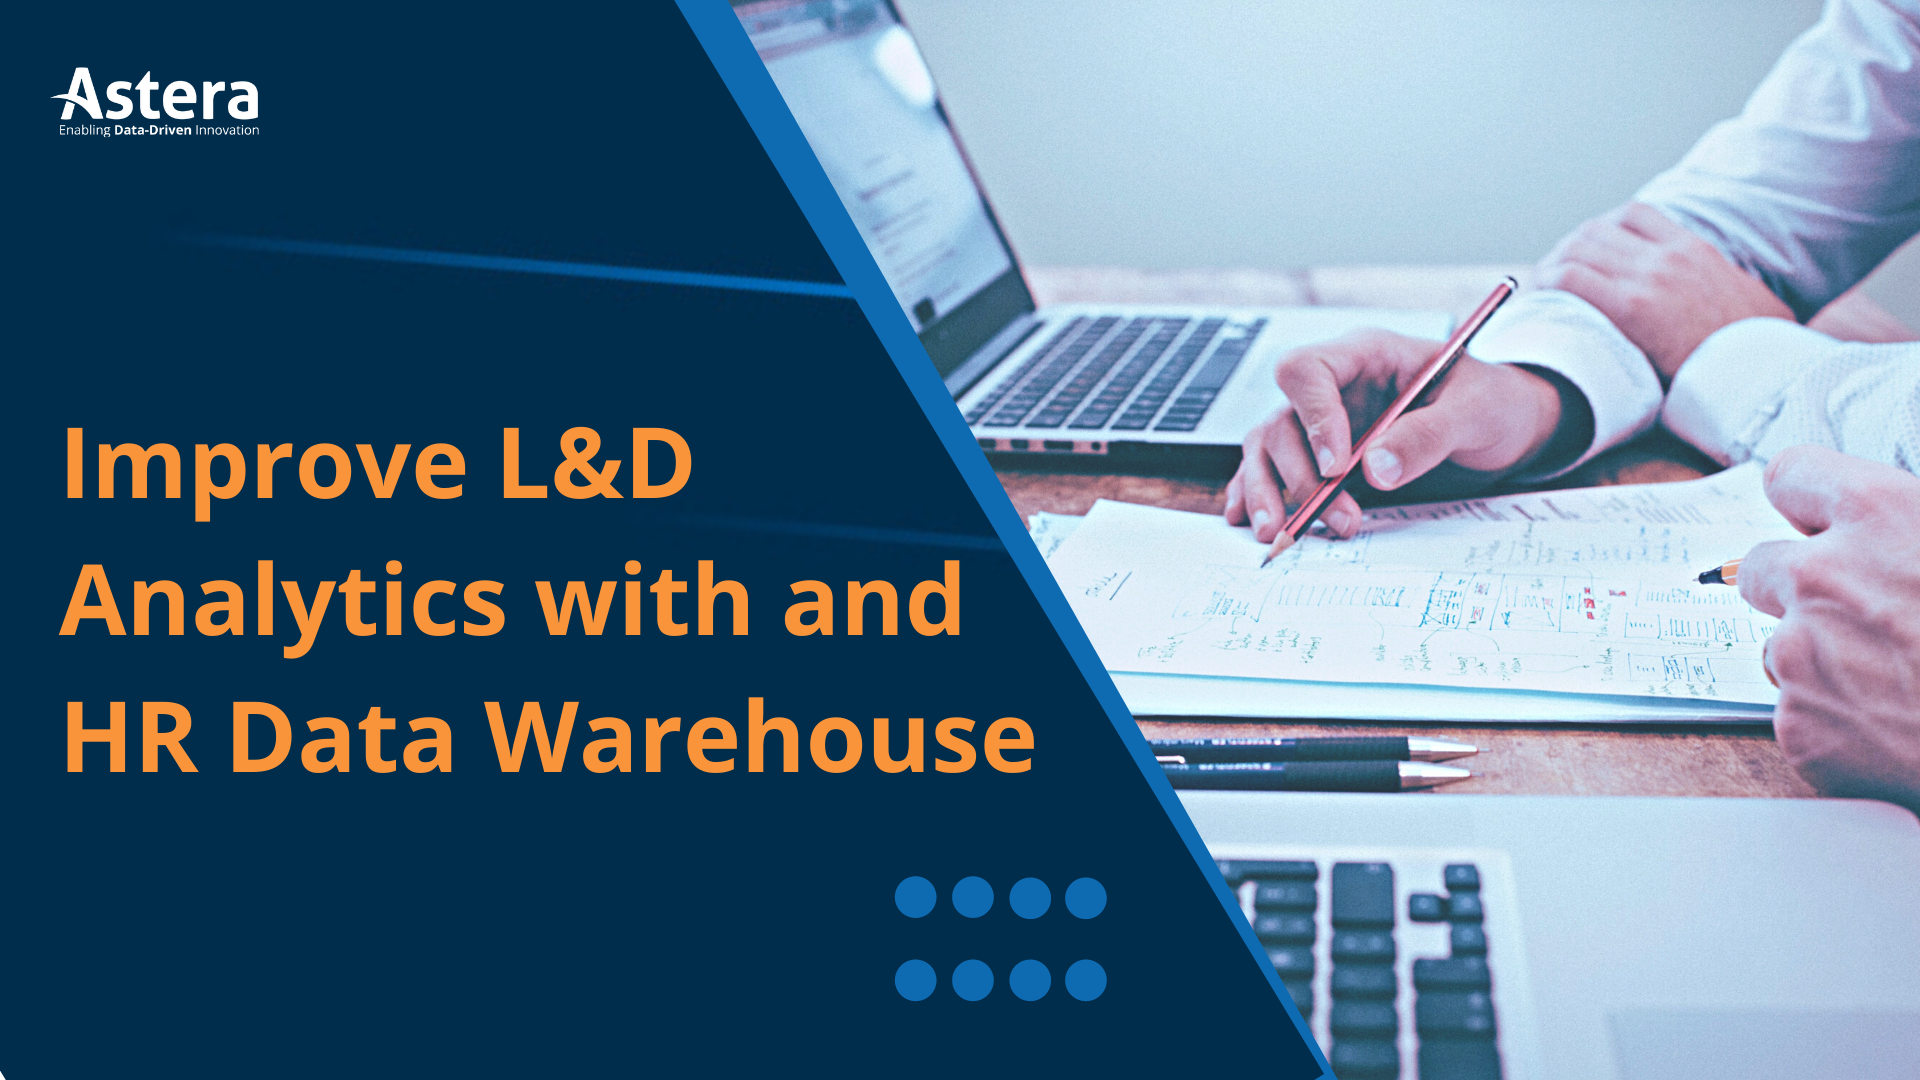 Aprendendo com dados: por que você precisa de um data warehouse para medir a eficácia de sua estratégia de L&D